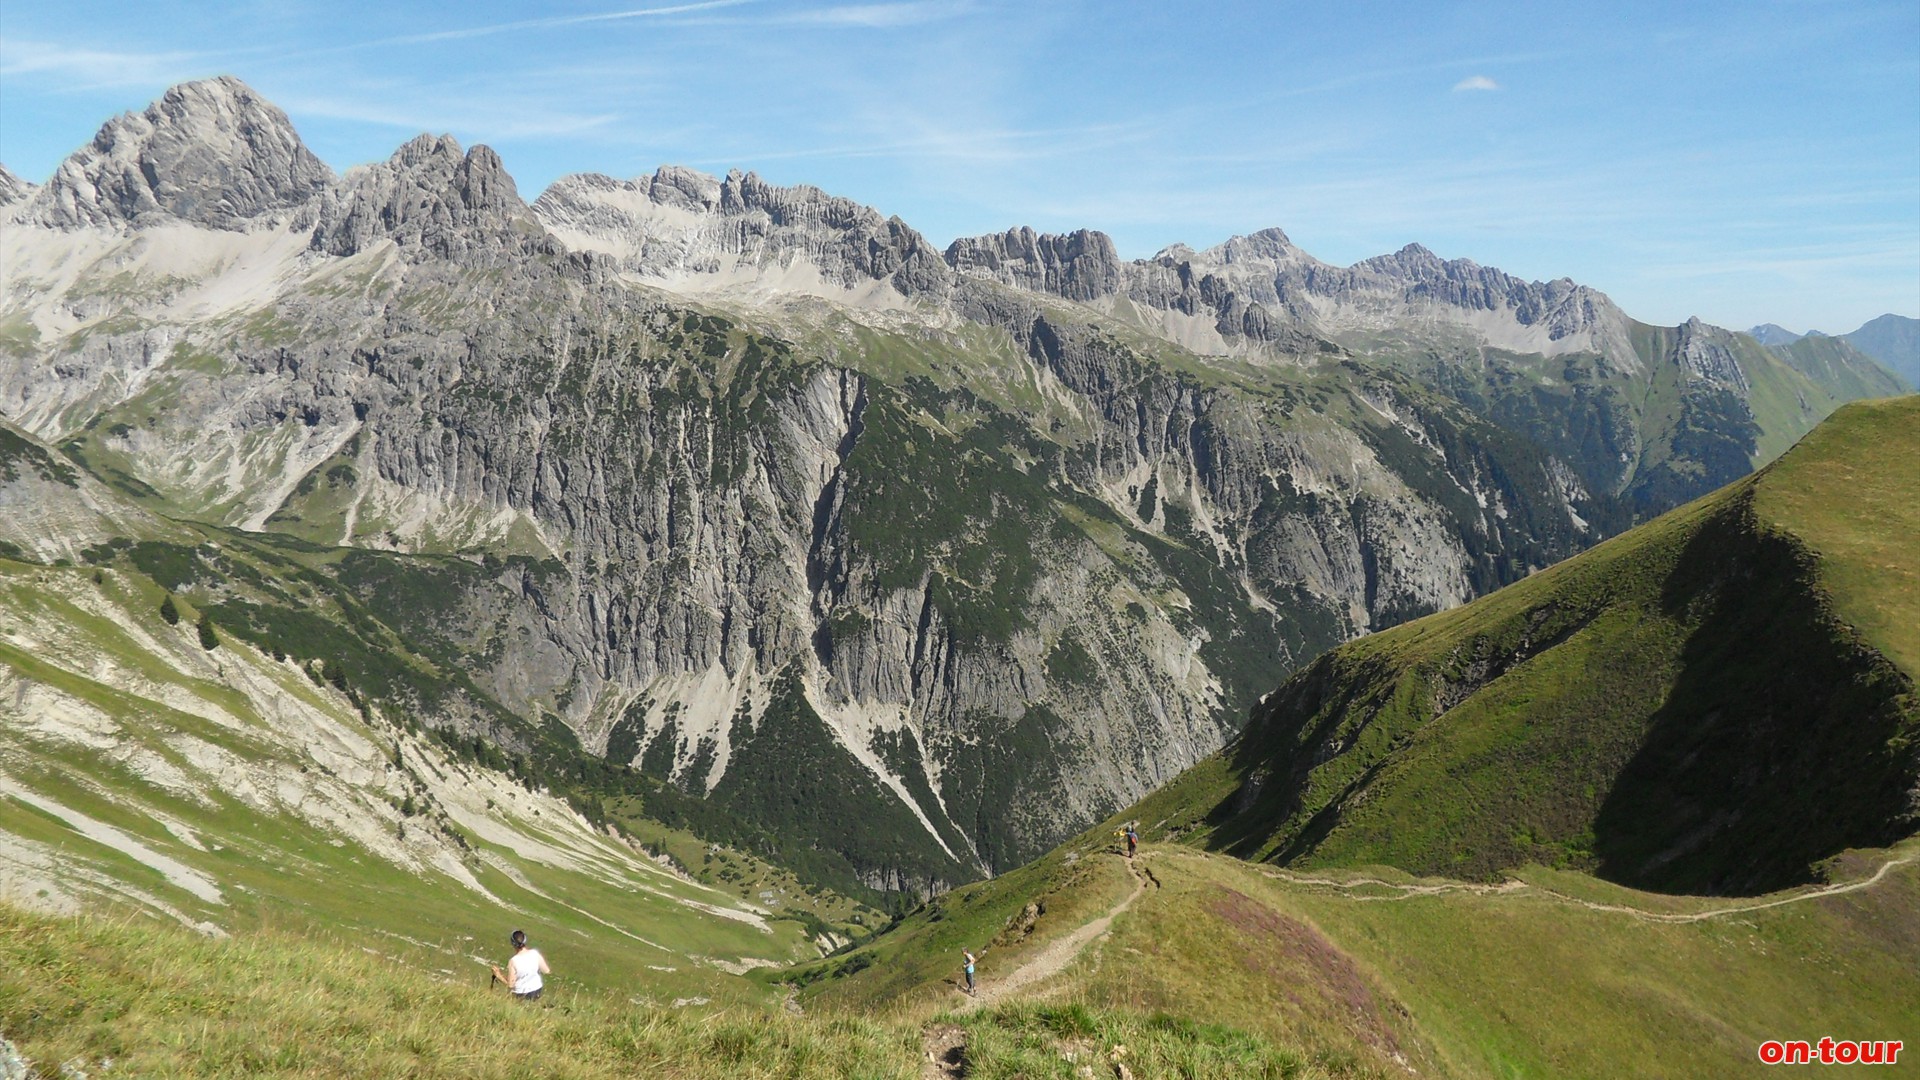 Unzhlige Kalkspitzen der Allguer Alpen. Rote Flchen auf den Grasmatten weisen auf 